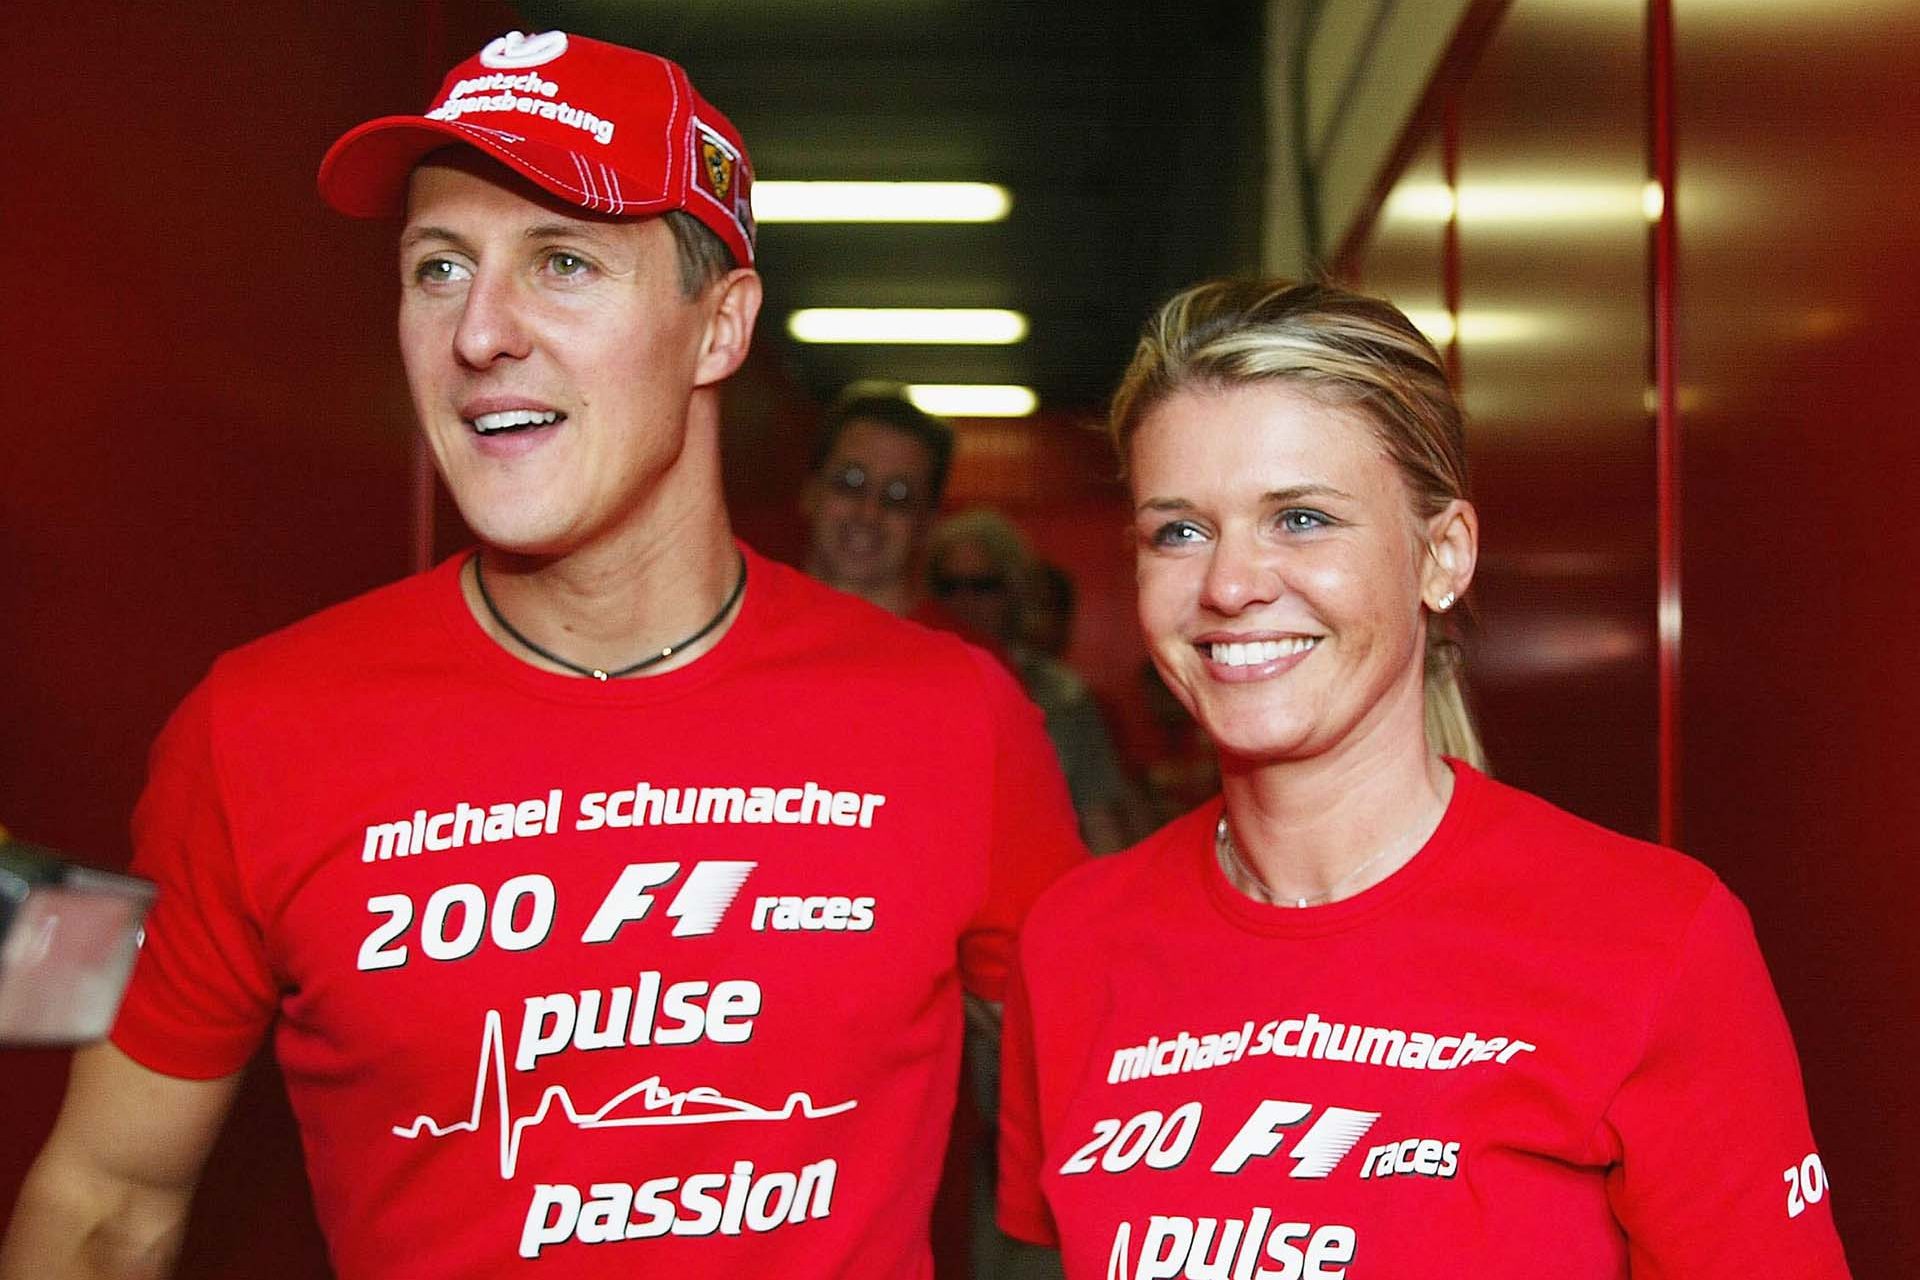 Die lebensverändernde Entscheidung, die Michael Schumachers Frau treffen musste